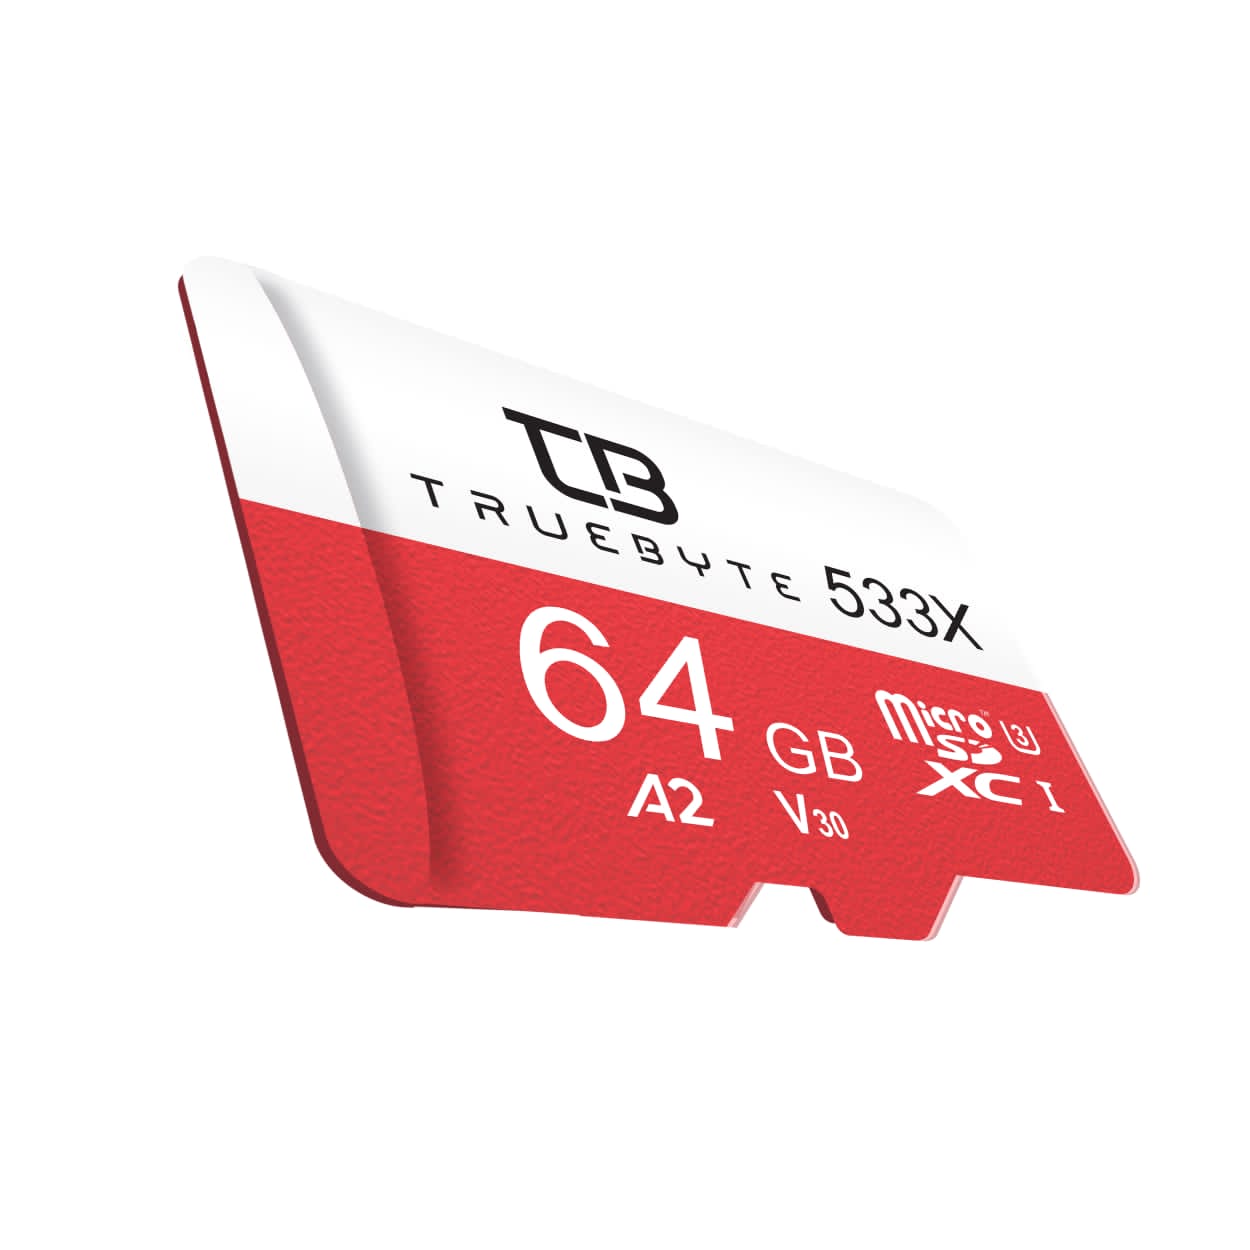 کارت حافظه Micro SD XC تروبایت مدل A2-V30-533X کلاس 10 استاندارد UHS-l U3 سرعت 80MBps ظرفیت 64 گیگابایت به همراه آداپتور SD